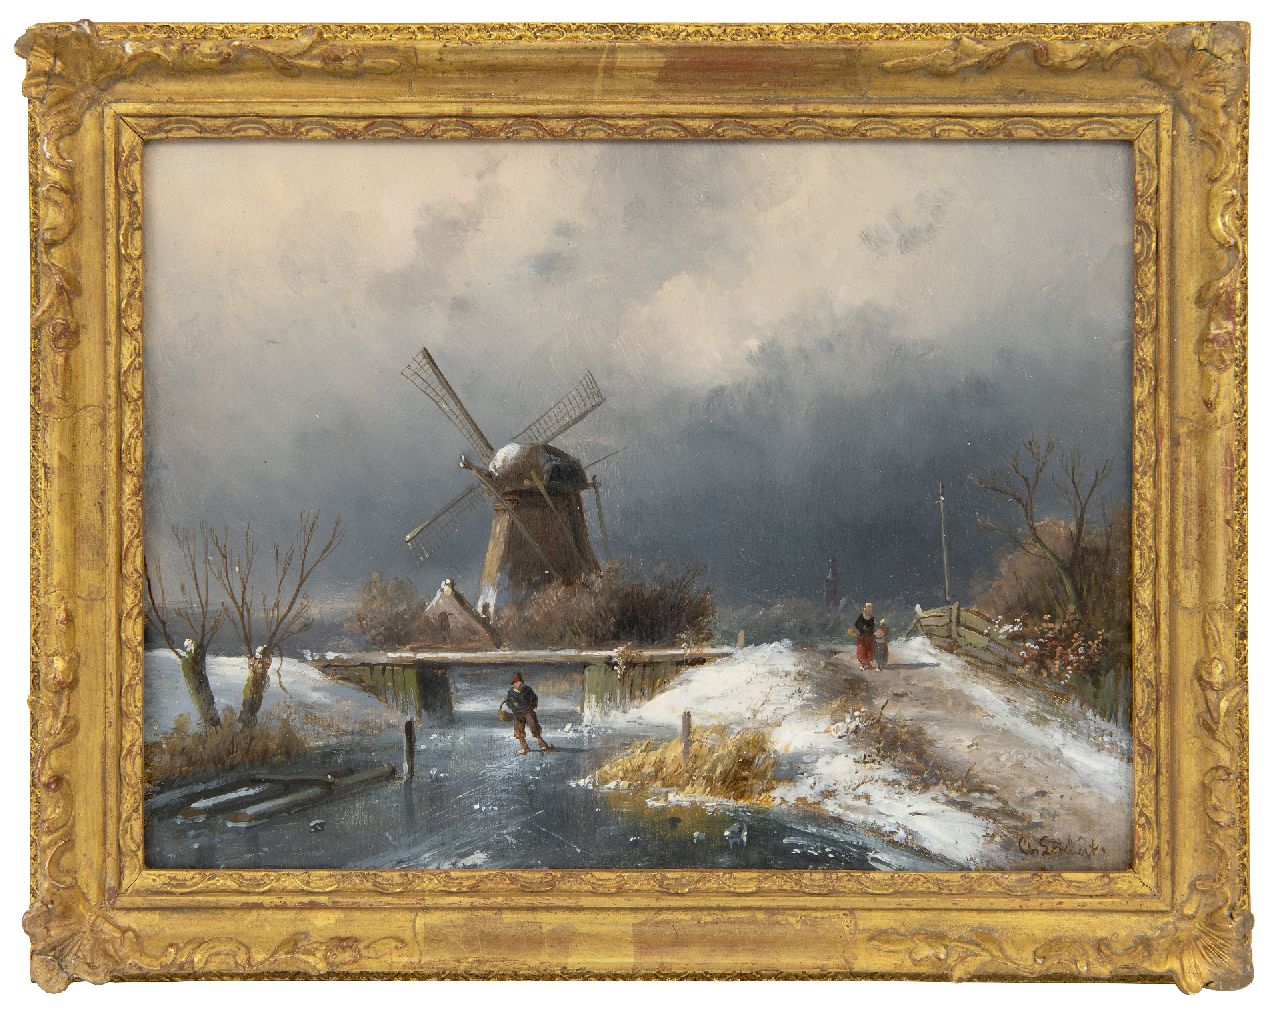 Leickert C.H.J.  | 'Charles' Henri Joseph Leickert | Schilderijen te koop aangeboden | Schaatser op een bevroren vaartje bij een molen, olieverf op paneel 19,2 x 26,0 cm, gesigneerd rechtsonder